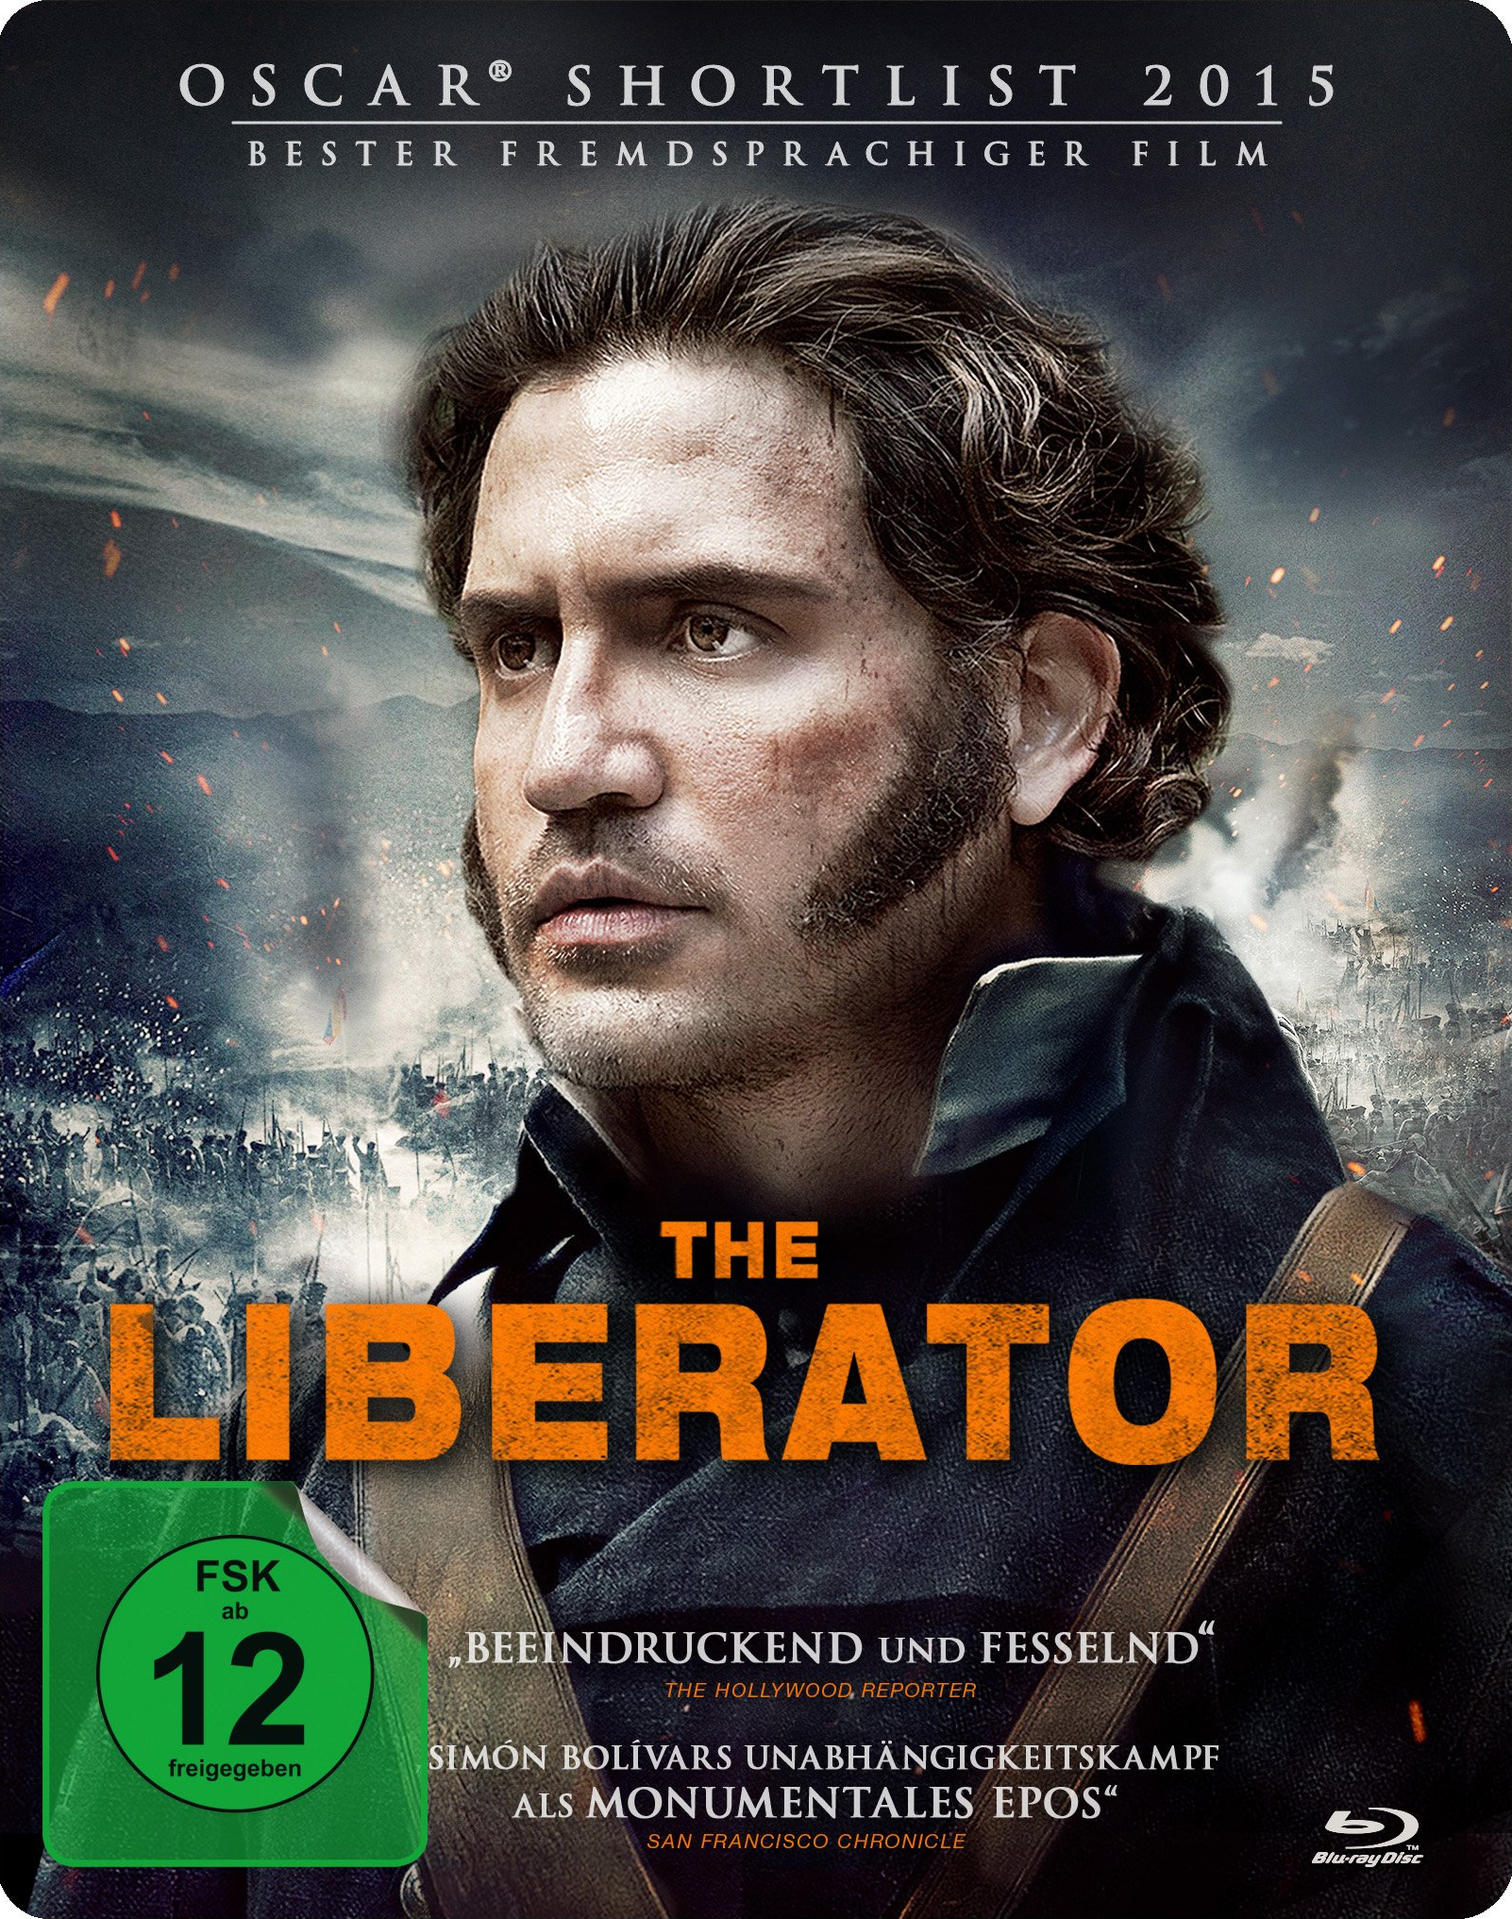 The Liberator Blu-ray